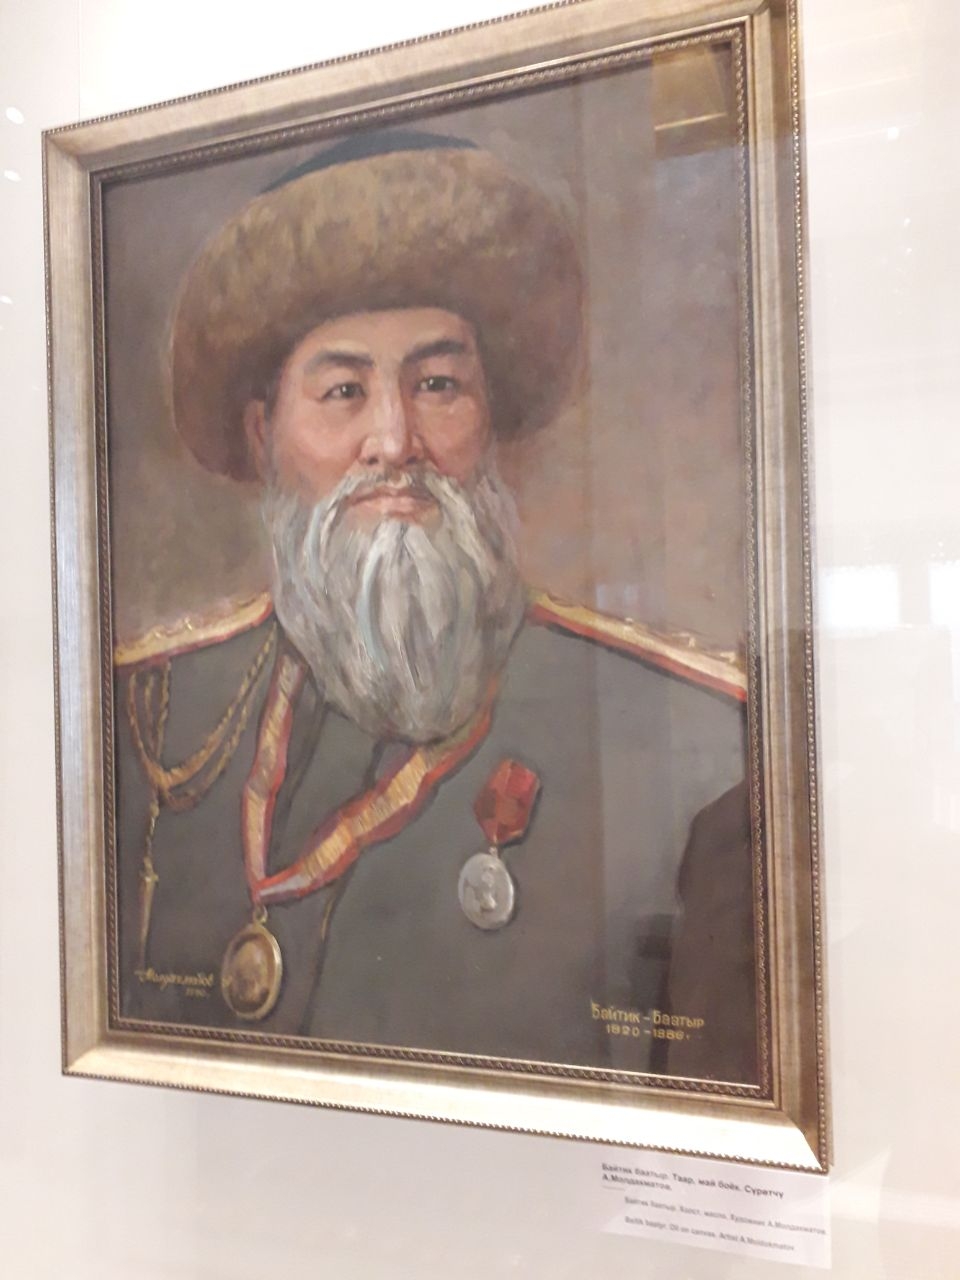 Киргизский государственный исторический музей Бишкек, Киргизия